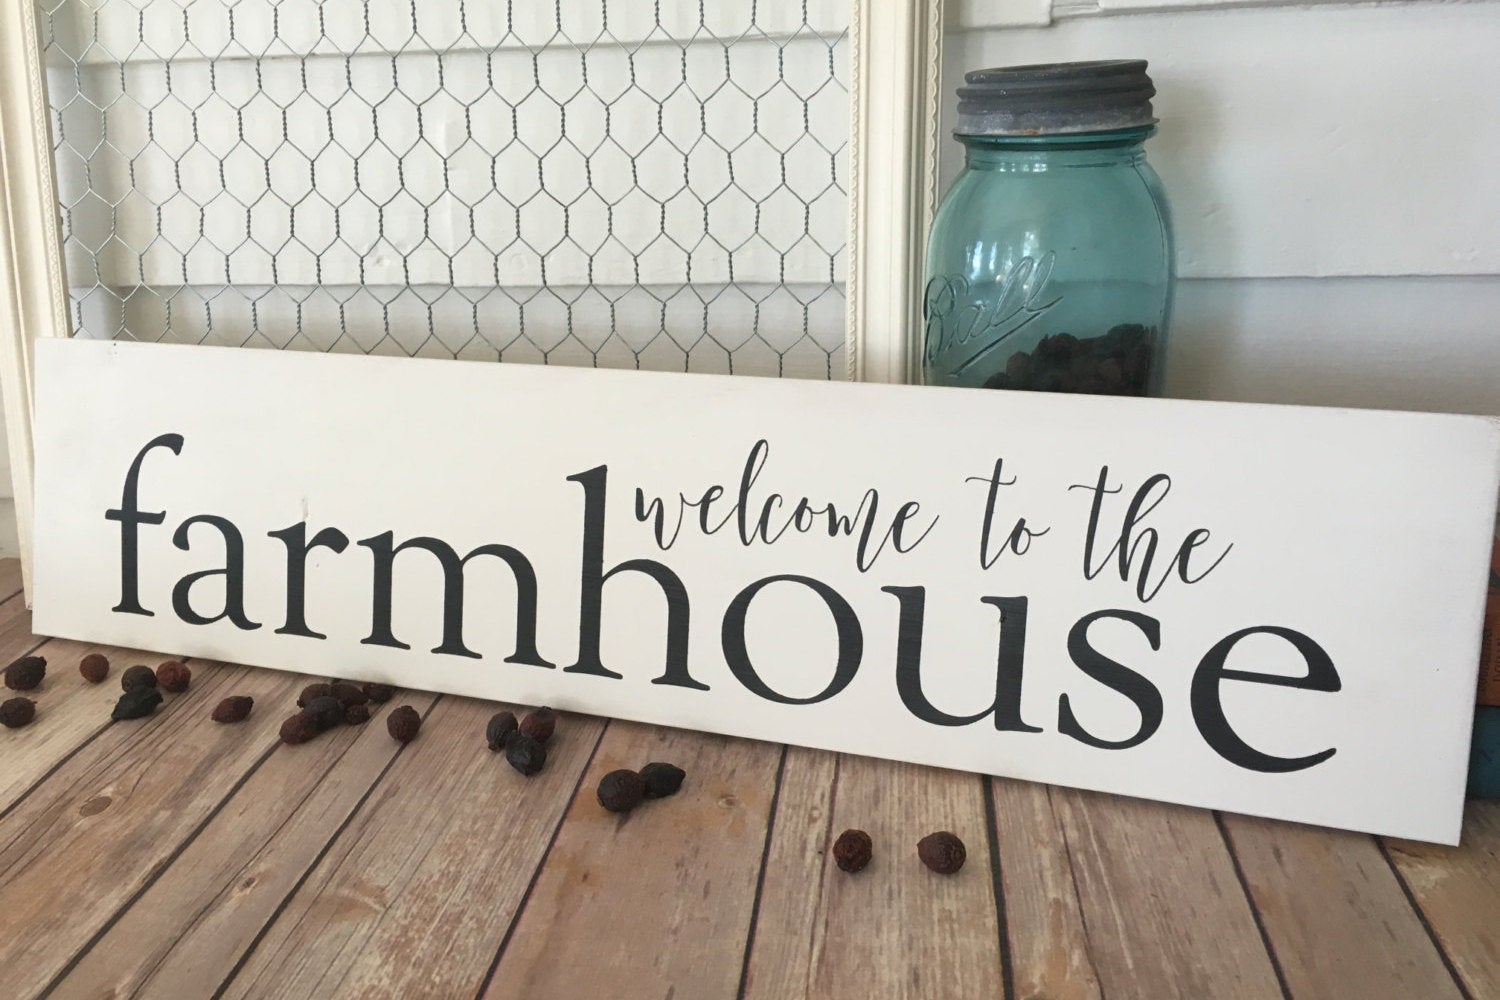 Farmhouse Decor Welcome to the Farmhouse Wooden Sign Home Decor Rustic Decor Modern Farmhouse